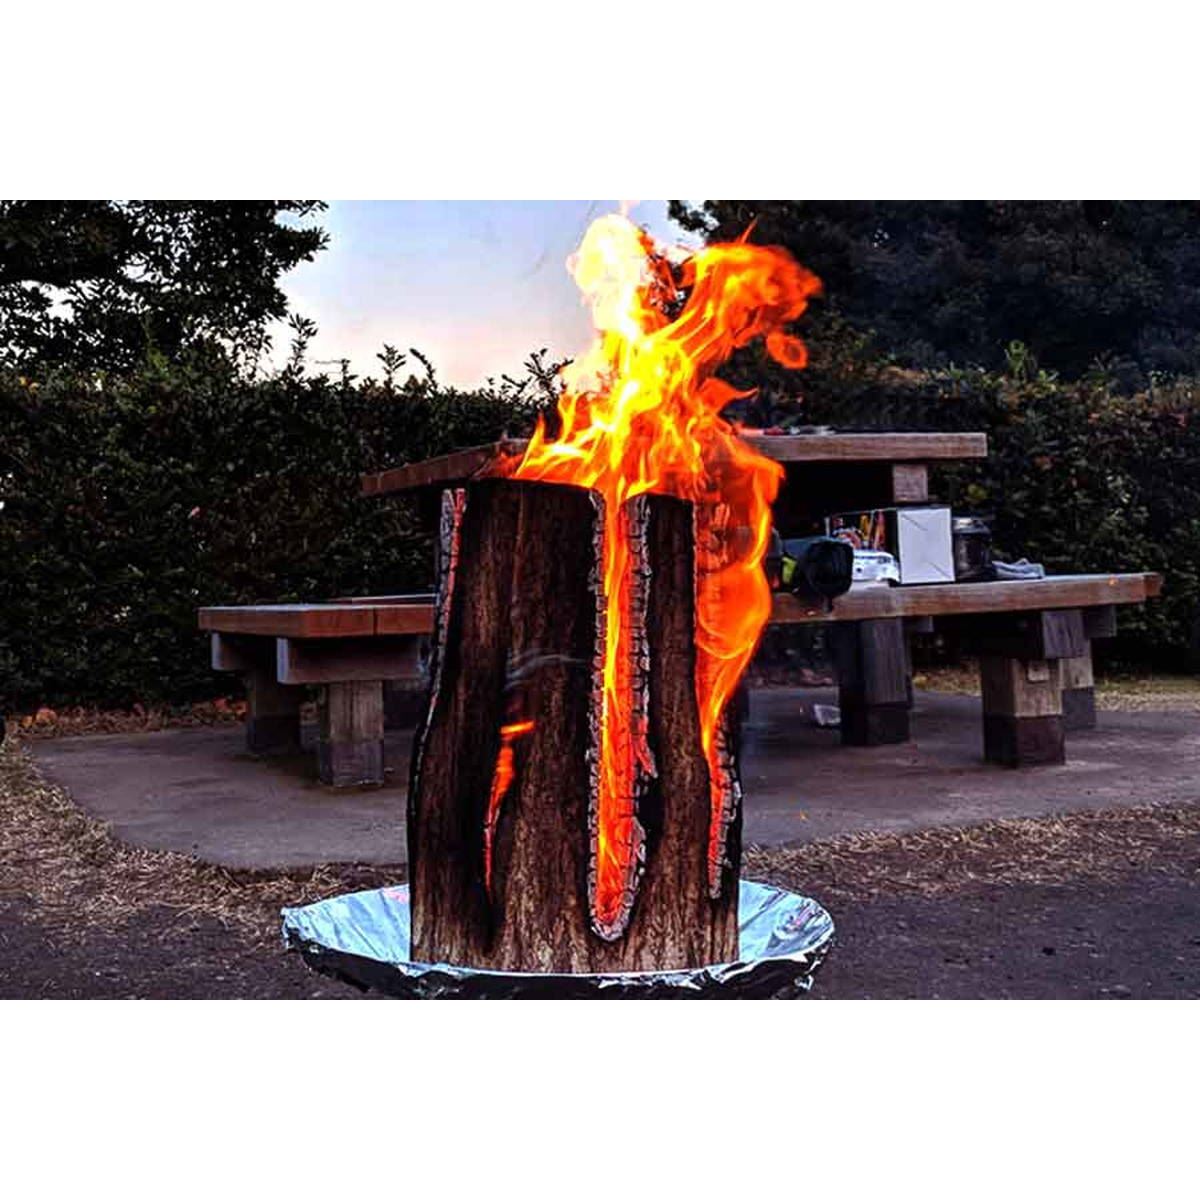 丸太を使った伝統の焚き火 スウェーデントーチ が冬のキャンプに最適